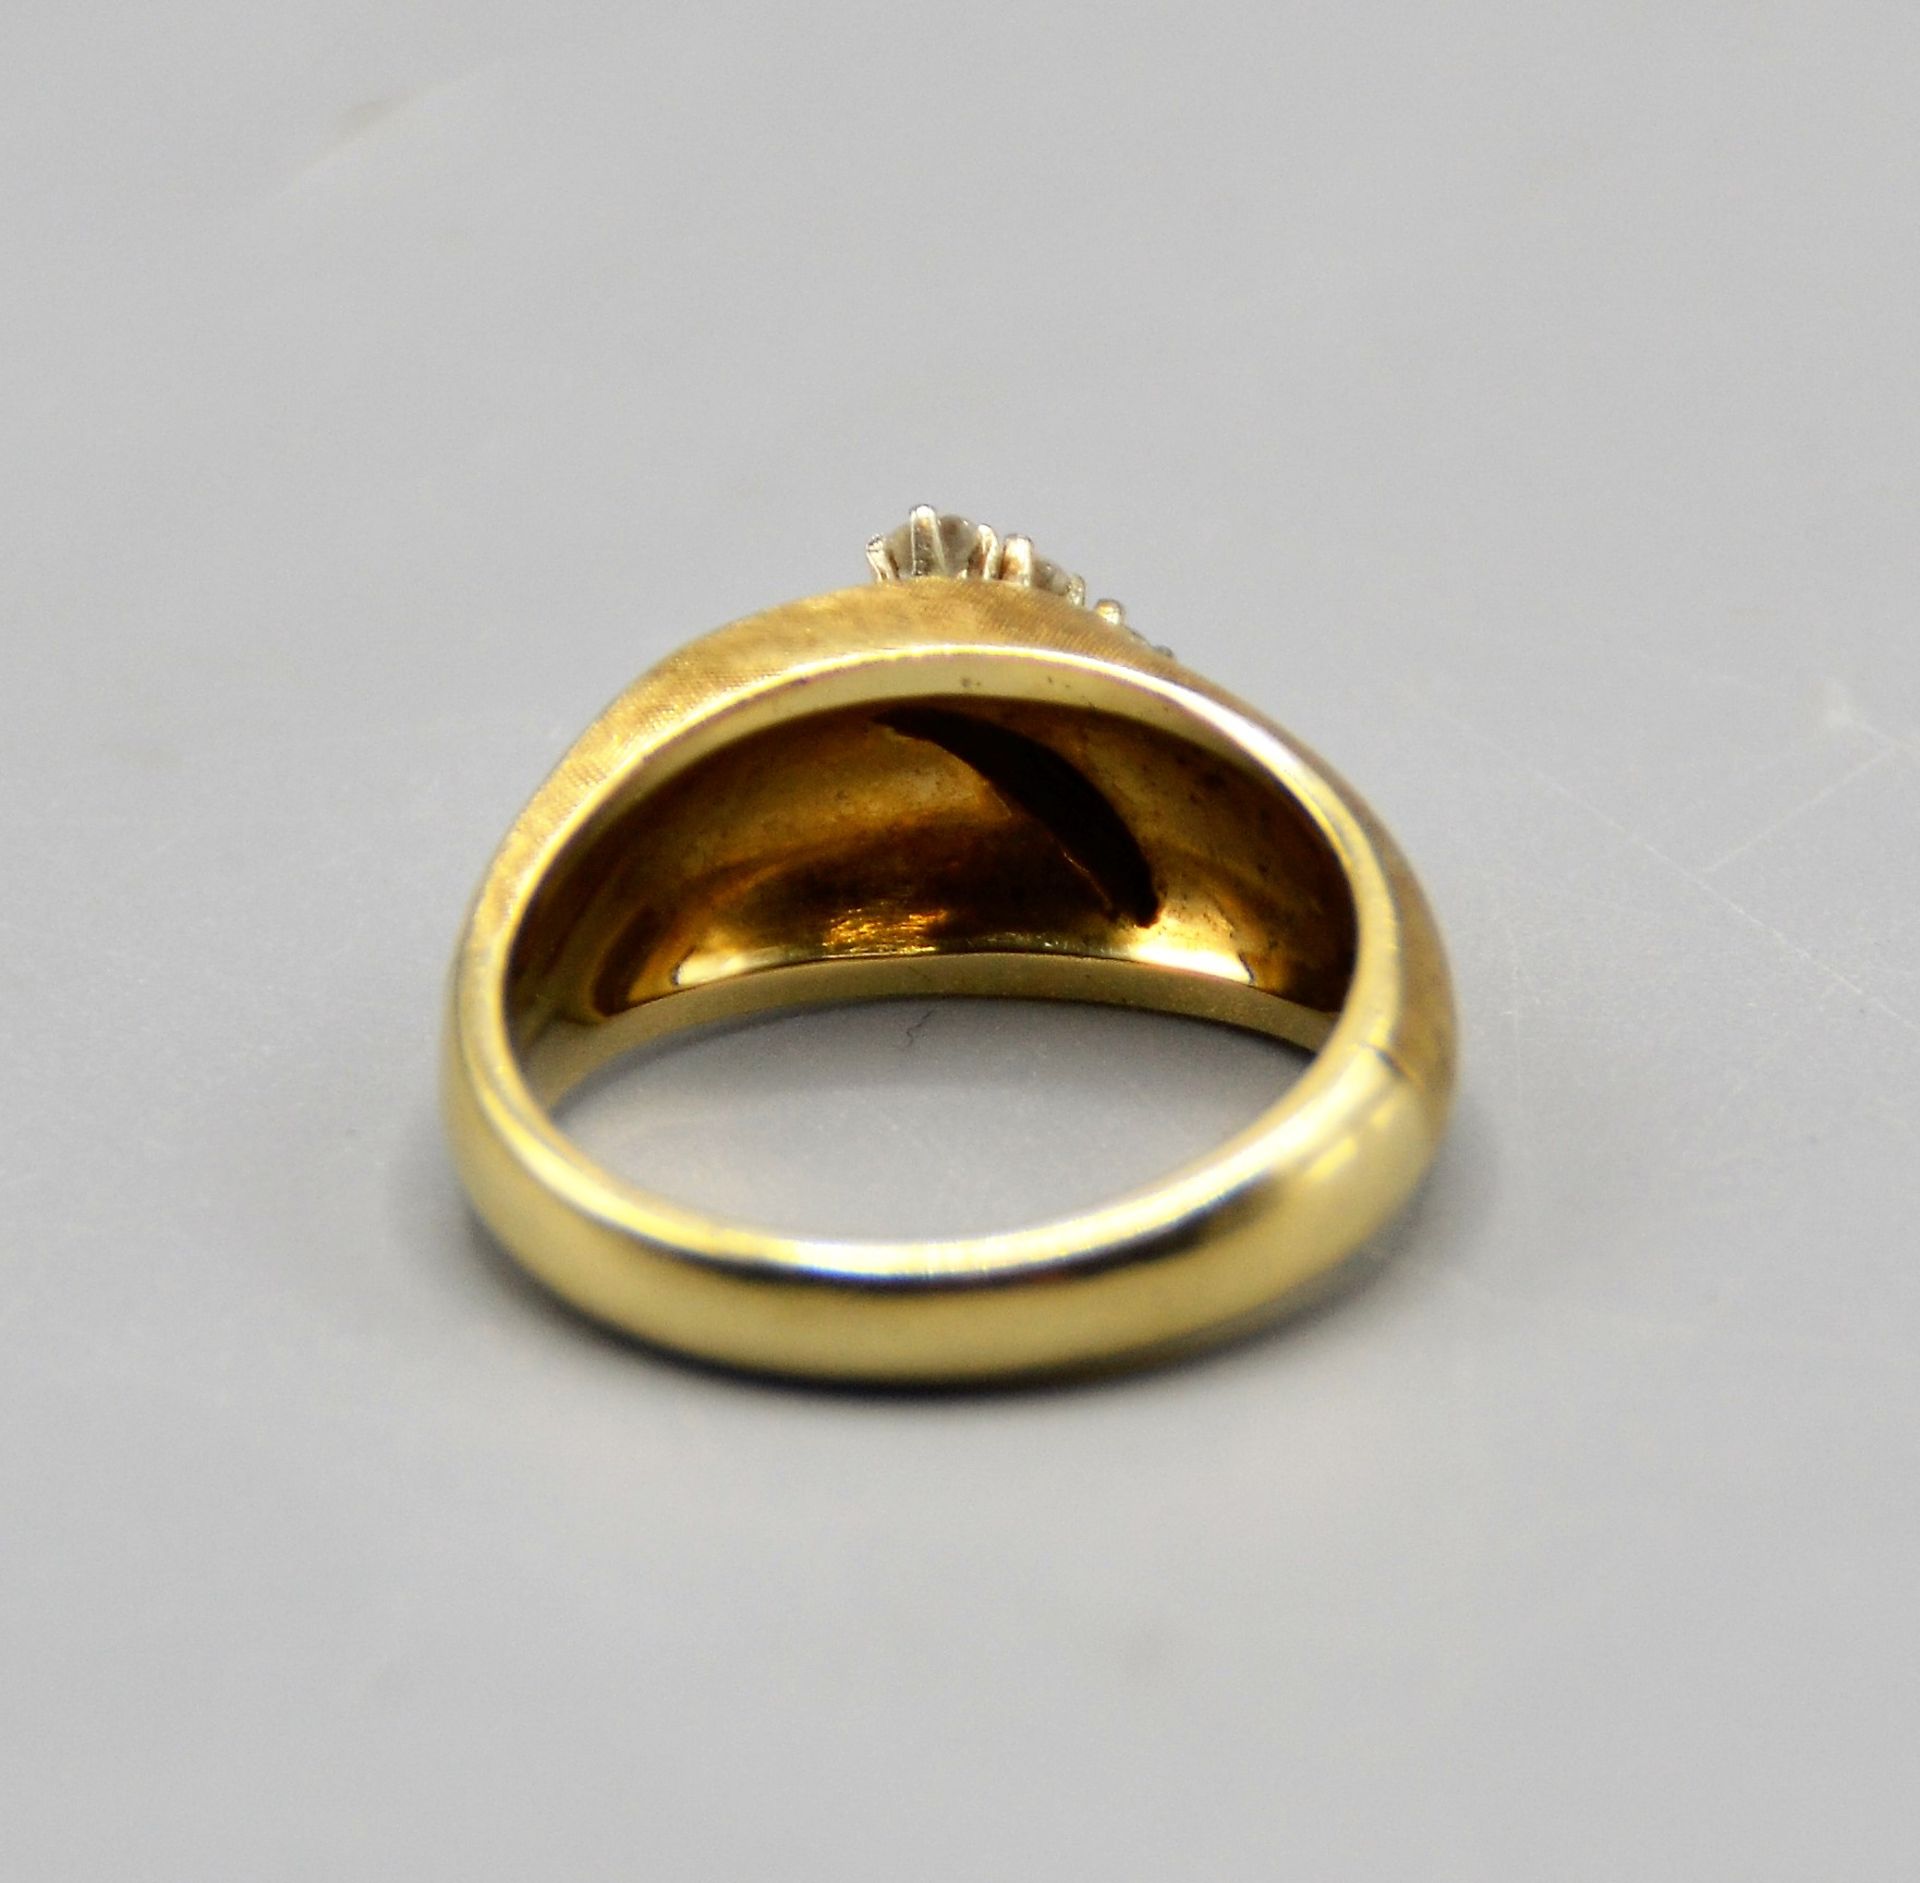 Brillantring Goldring 585 mit 4 kleinen Brillanten zus. ca. 0,2 ct., Ring Ø 17 mm, 7,8 g - Image 4 of 4